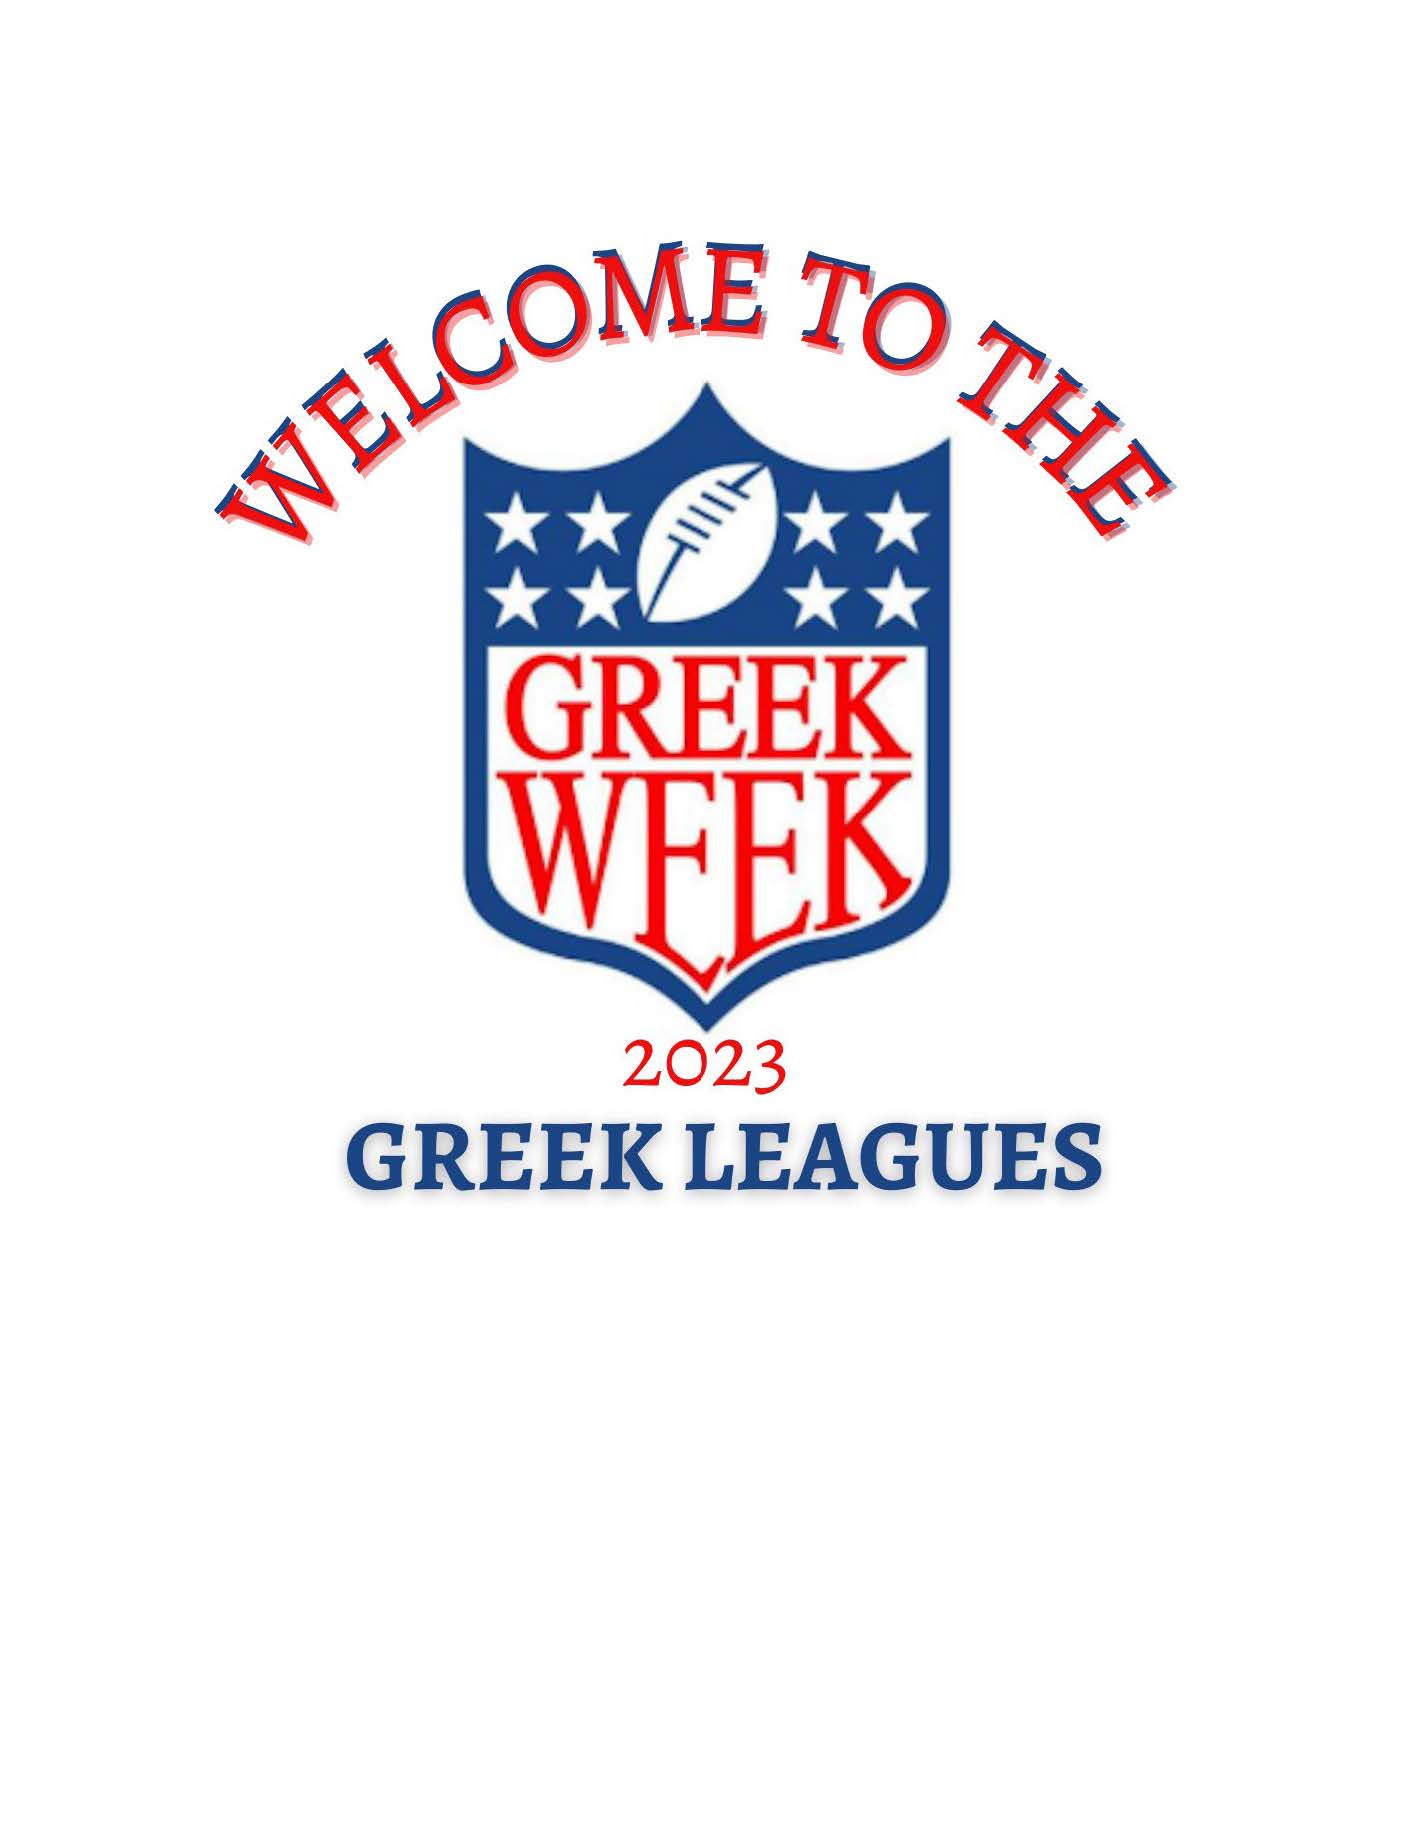 Greek Week Logo